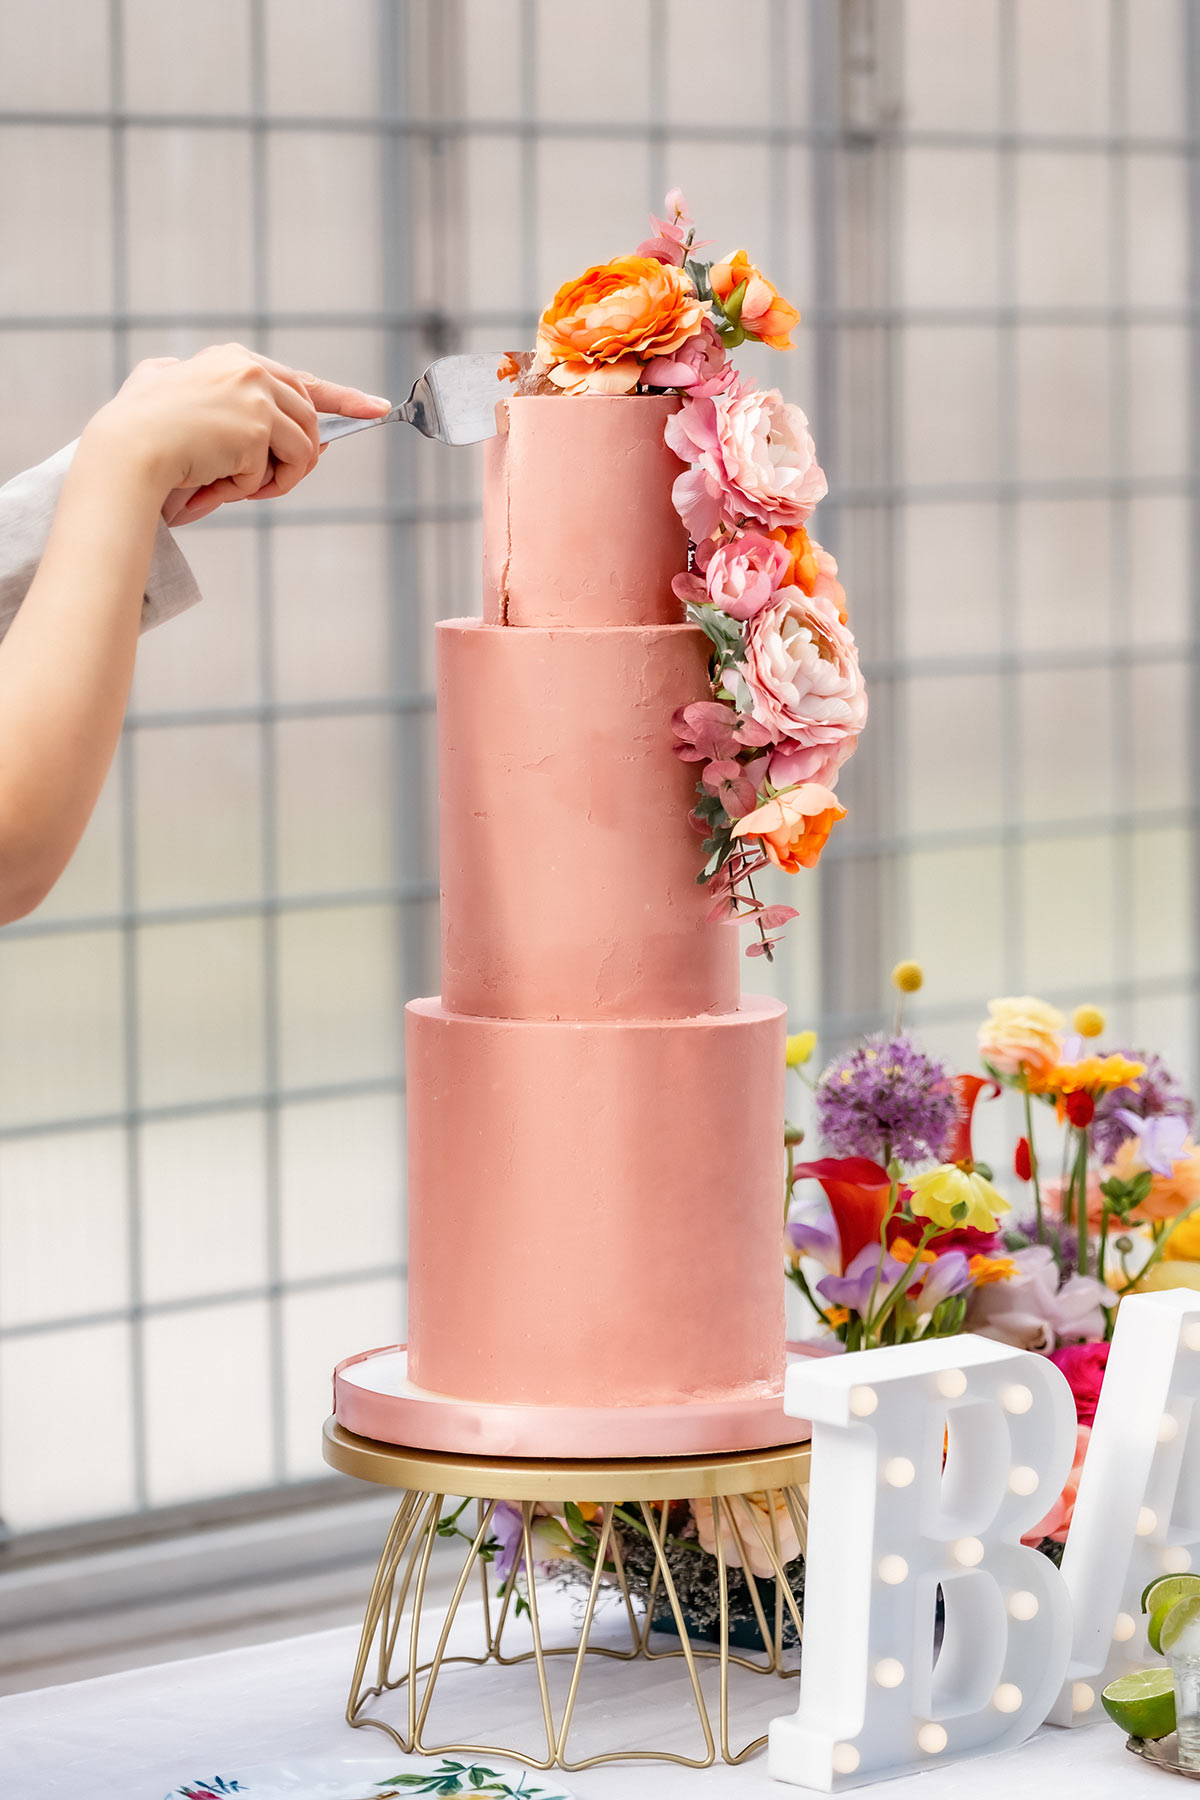 Två händer håller i en tårtspade som skär en bit av en hög, rosa bröllopstårta. Tårtan är dekorerad med levande blommor.